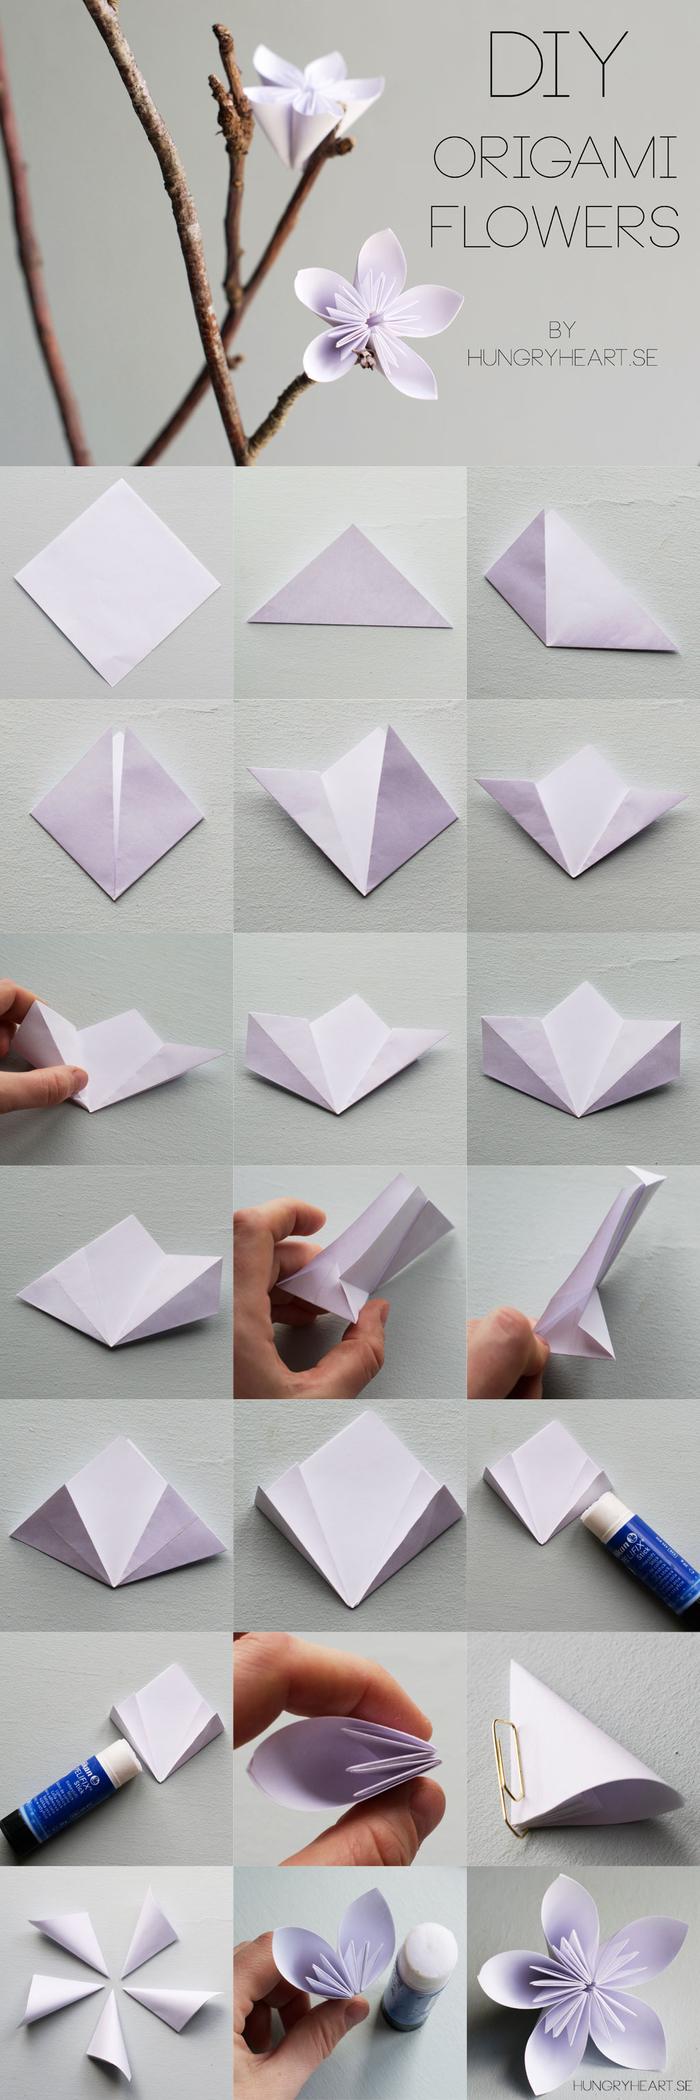 pliage esthétique et harmonieux d'une fleur en origami kusudama, idée pour une déco en branche fleurie décorée de fleurs en origami